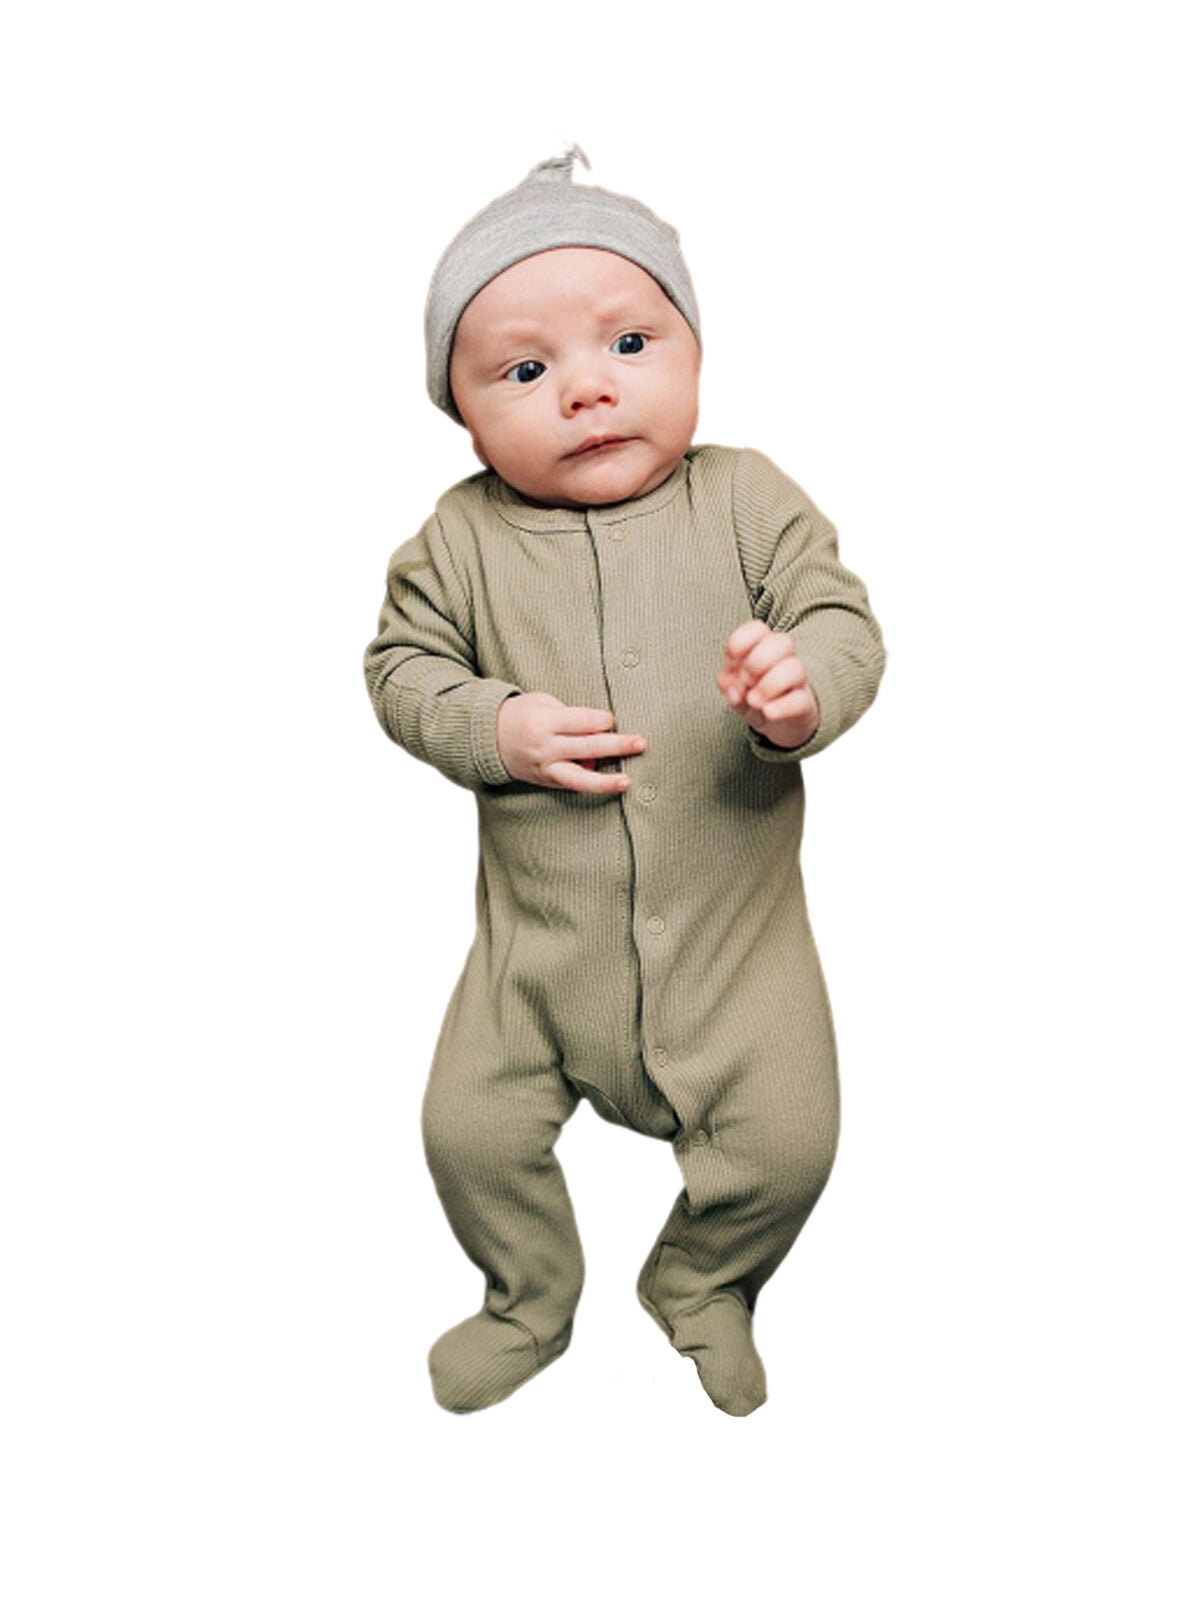 Newborn Infant Baby Boy Girl Cotton Romper Bodysuit Jumpsuit Clothes Outfit